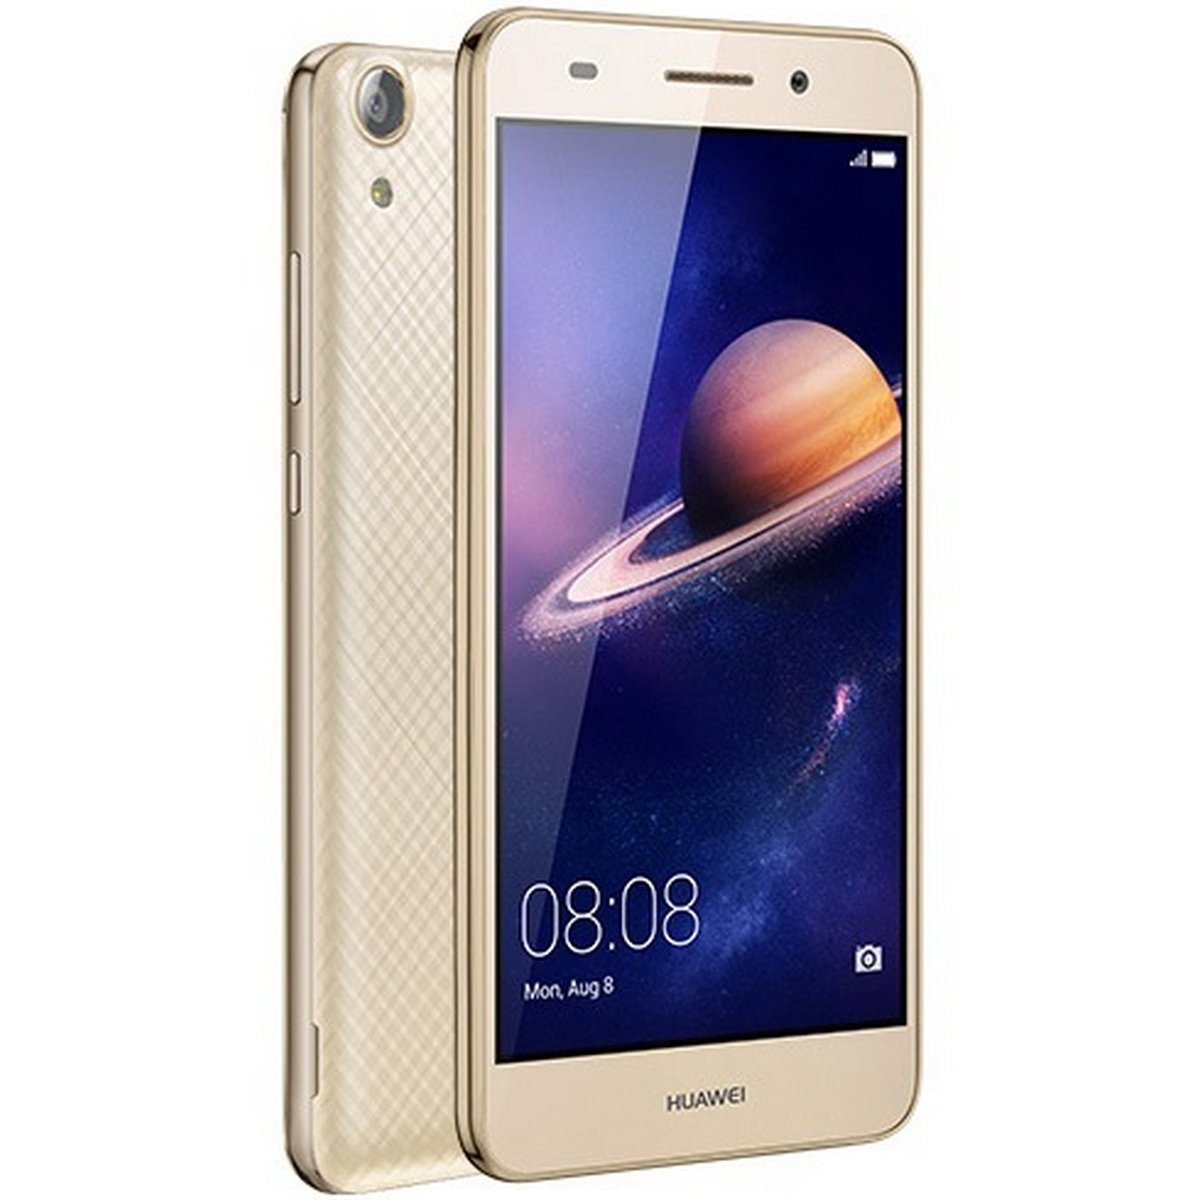 Toevoeging Beroemdheid spek Huawei Ascend Y6 II 4G Gold Online at Best Price | Smart Phones | Lulu KSA